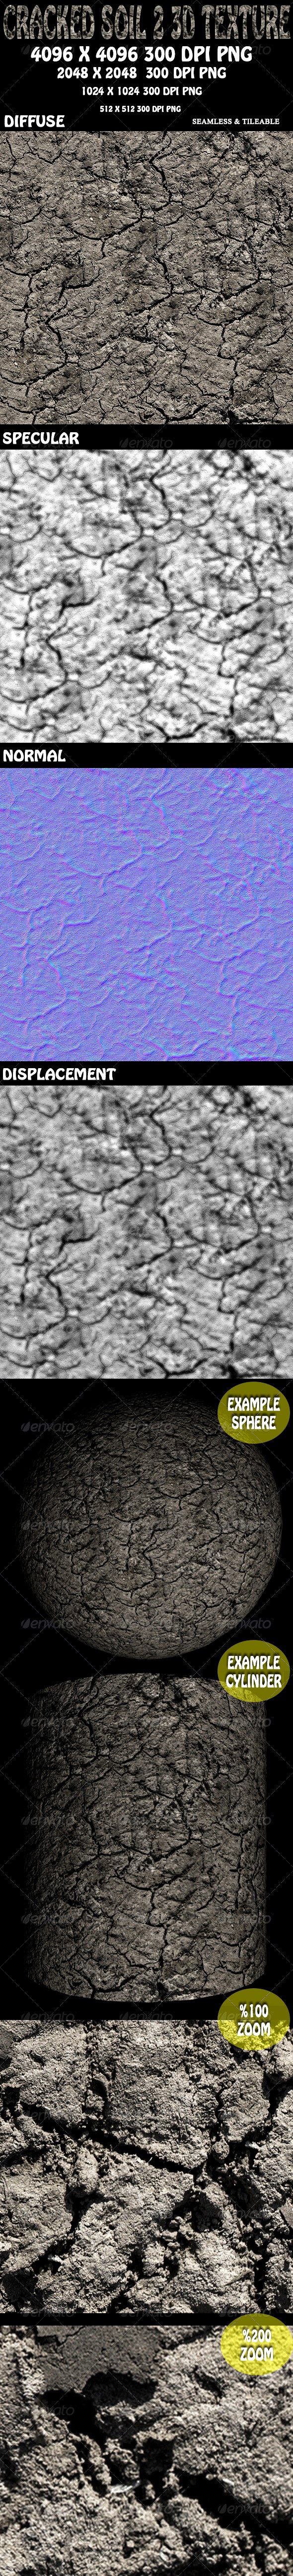 Cracked Soil 2 - 3D Texture